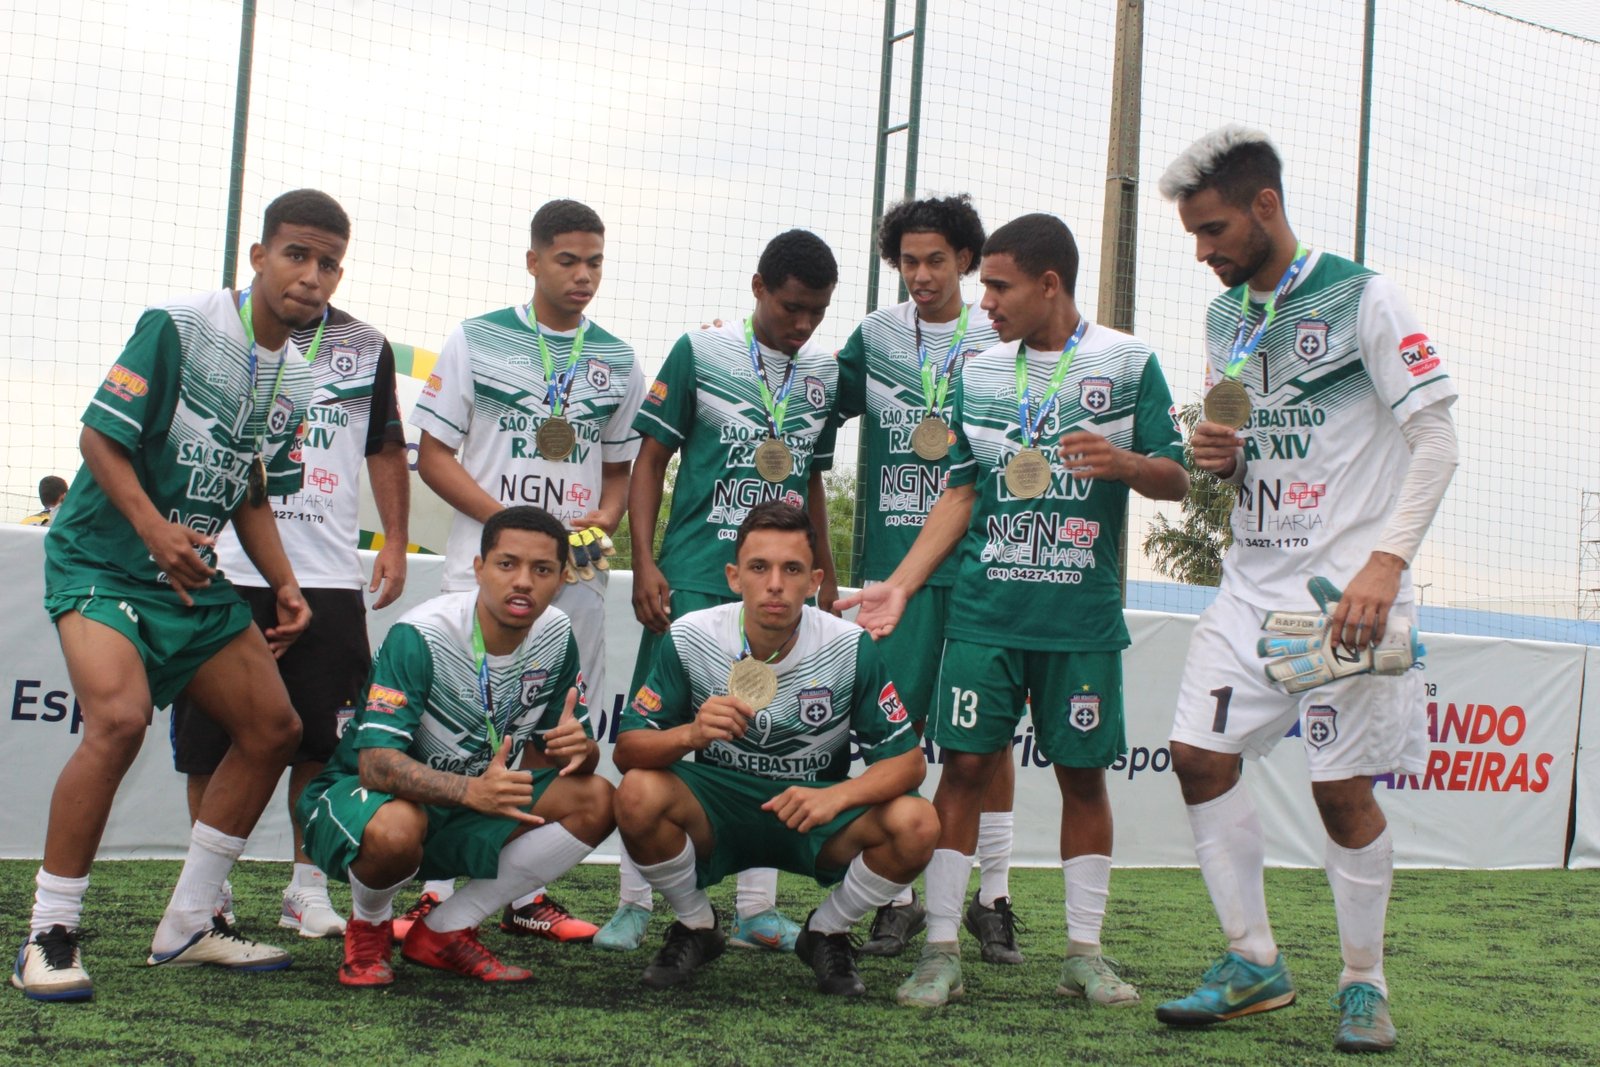 Circuito Futebol Social 2022 leva lazer e diversão para jovens carentes no Distrito Federal